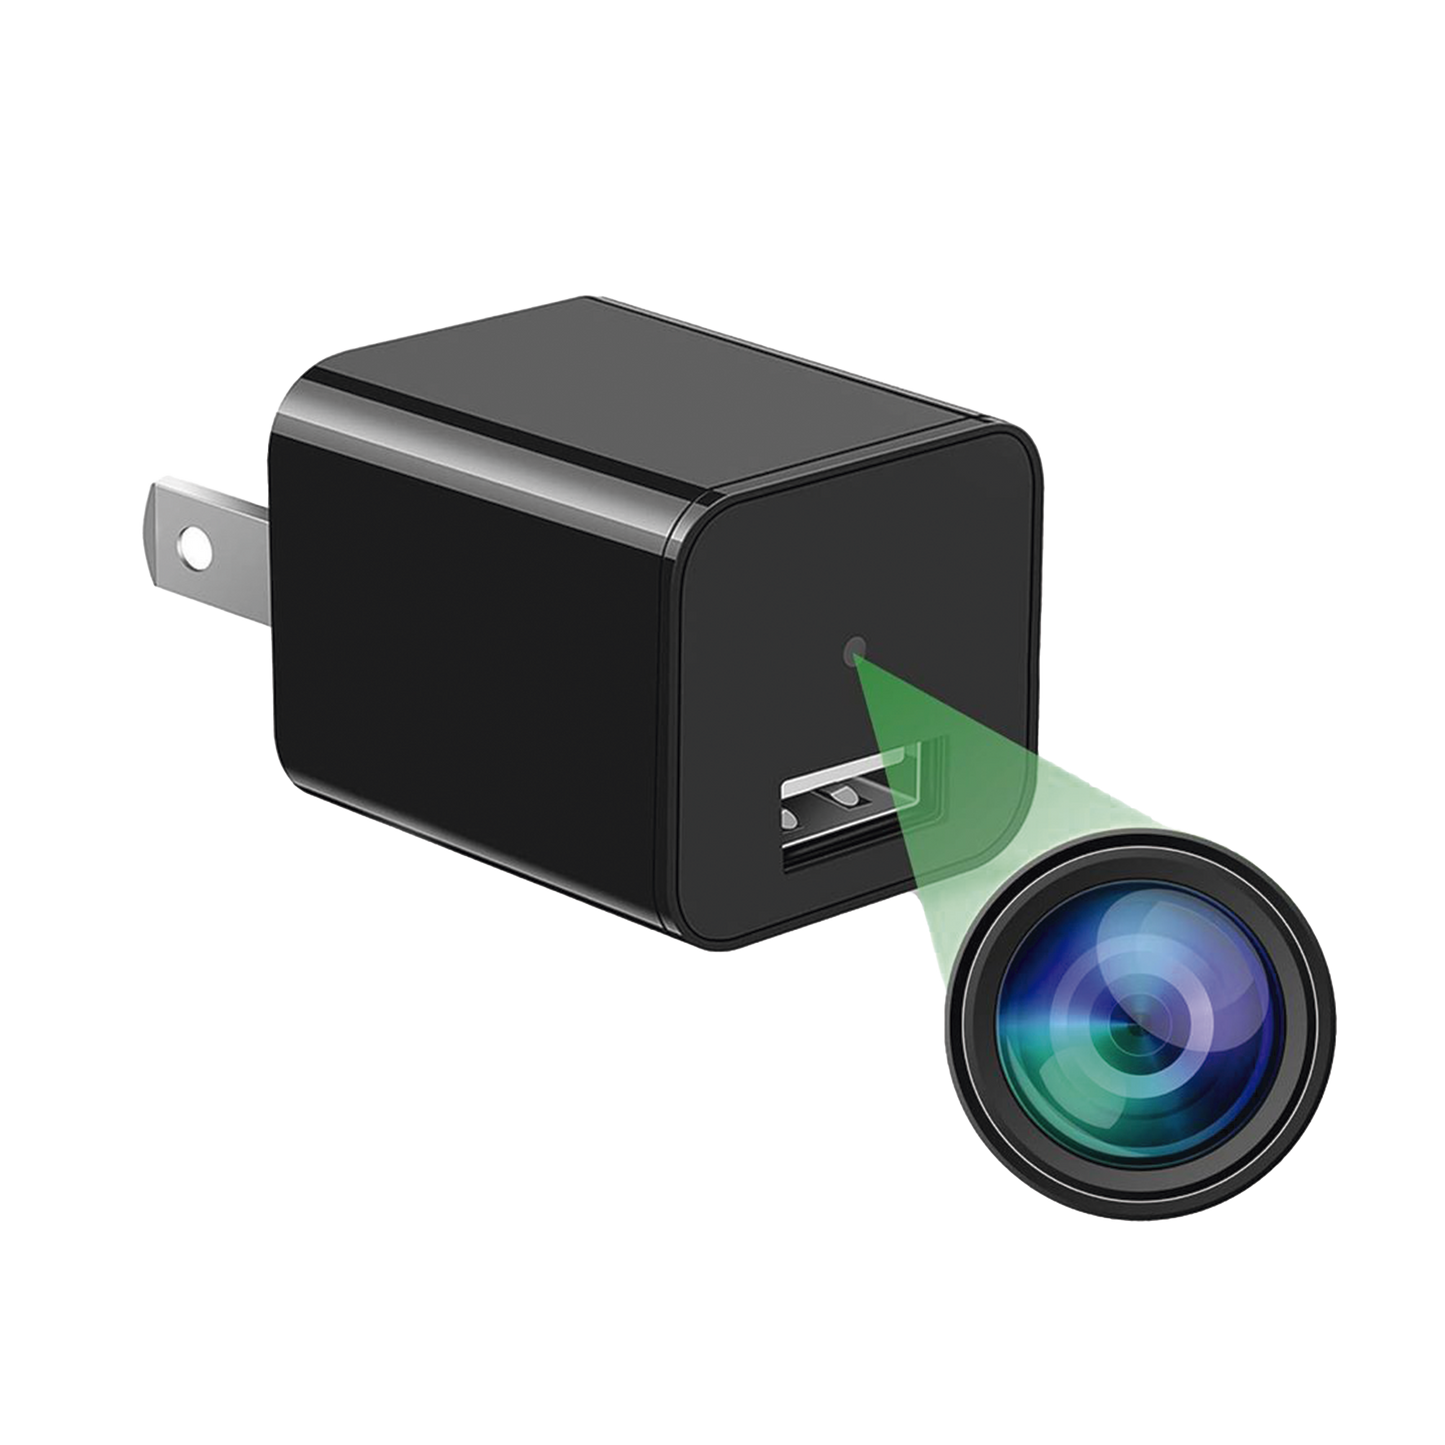 Cámara Oculta en Cargador de Pared (Spyce Camera) / Memoria de 8GB / Resolución 2 Megapixel (1080P) / Grabación Continua o por Movimiento